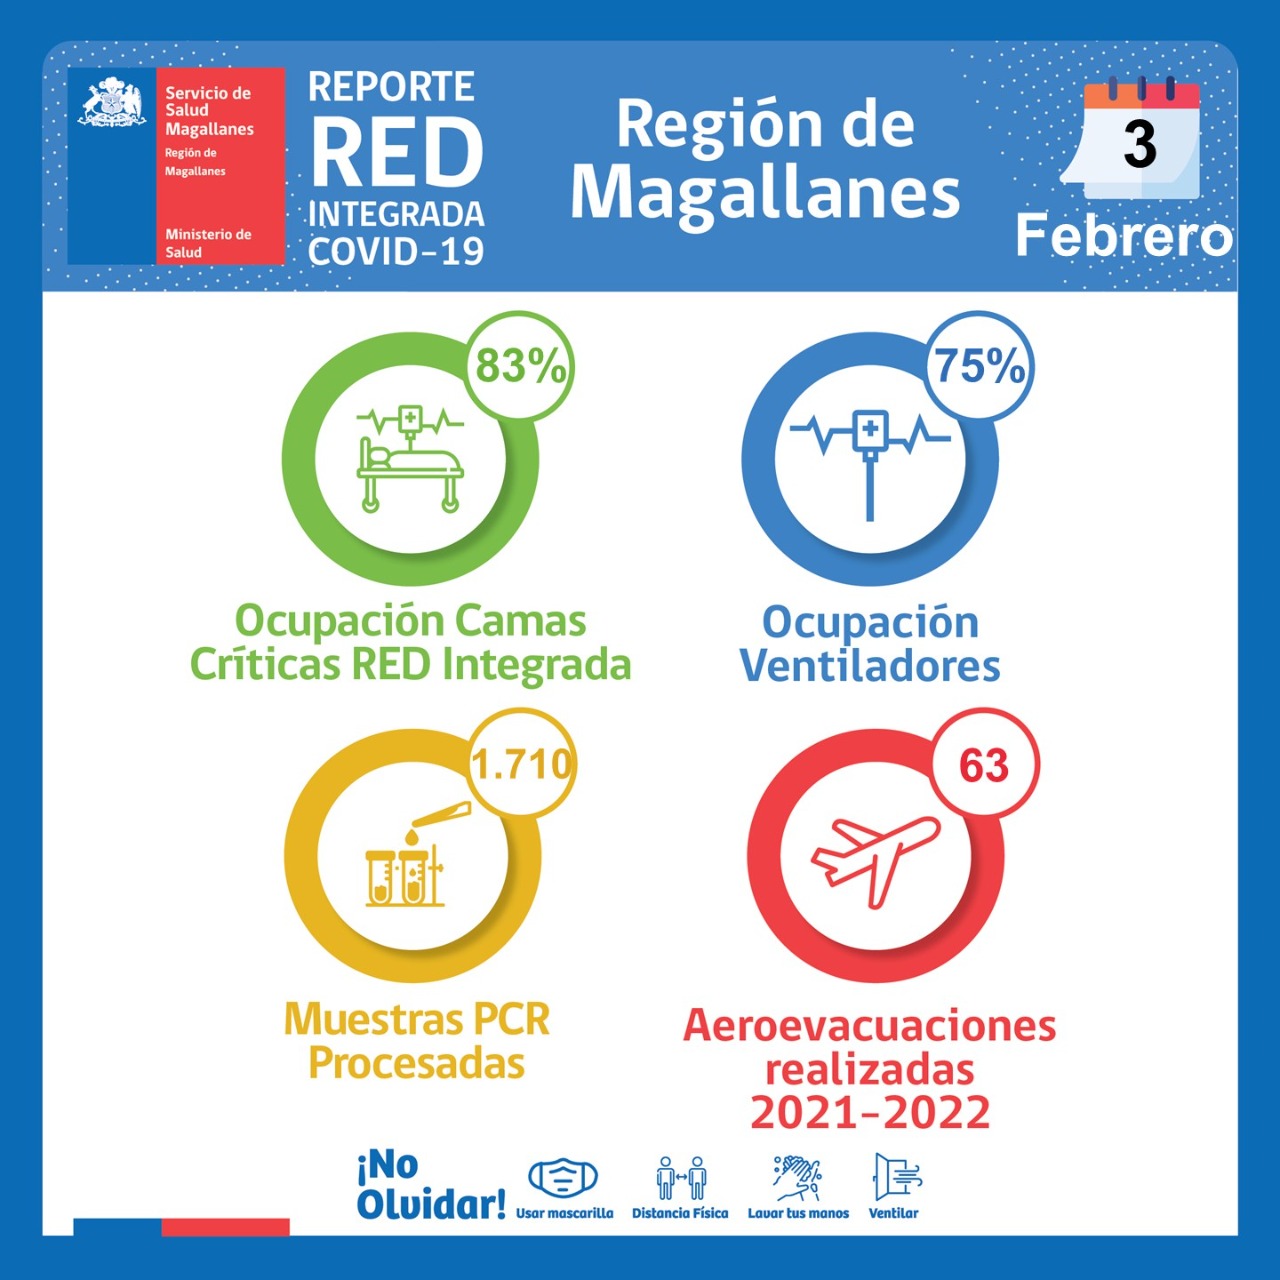 Estado de la red integrada covid19 en Magallanes, al jueves 3 de febrero